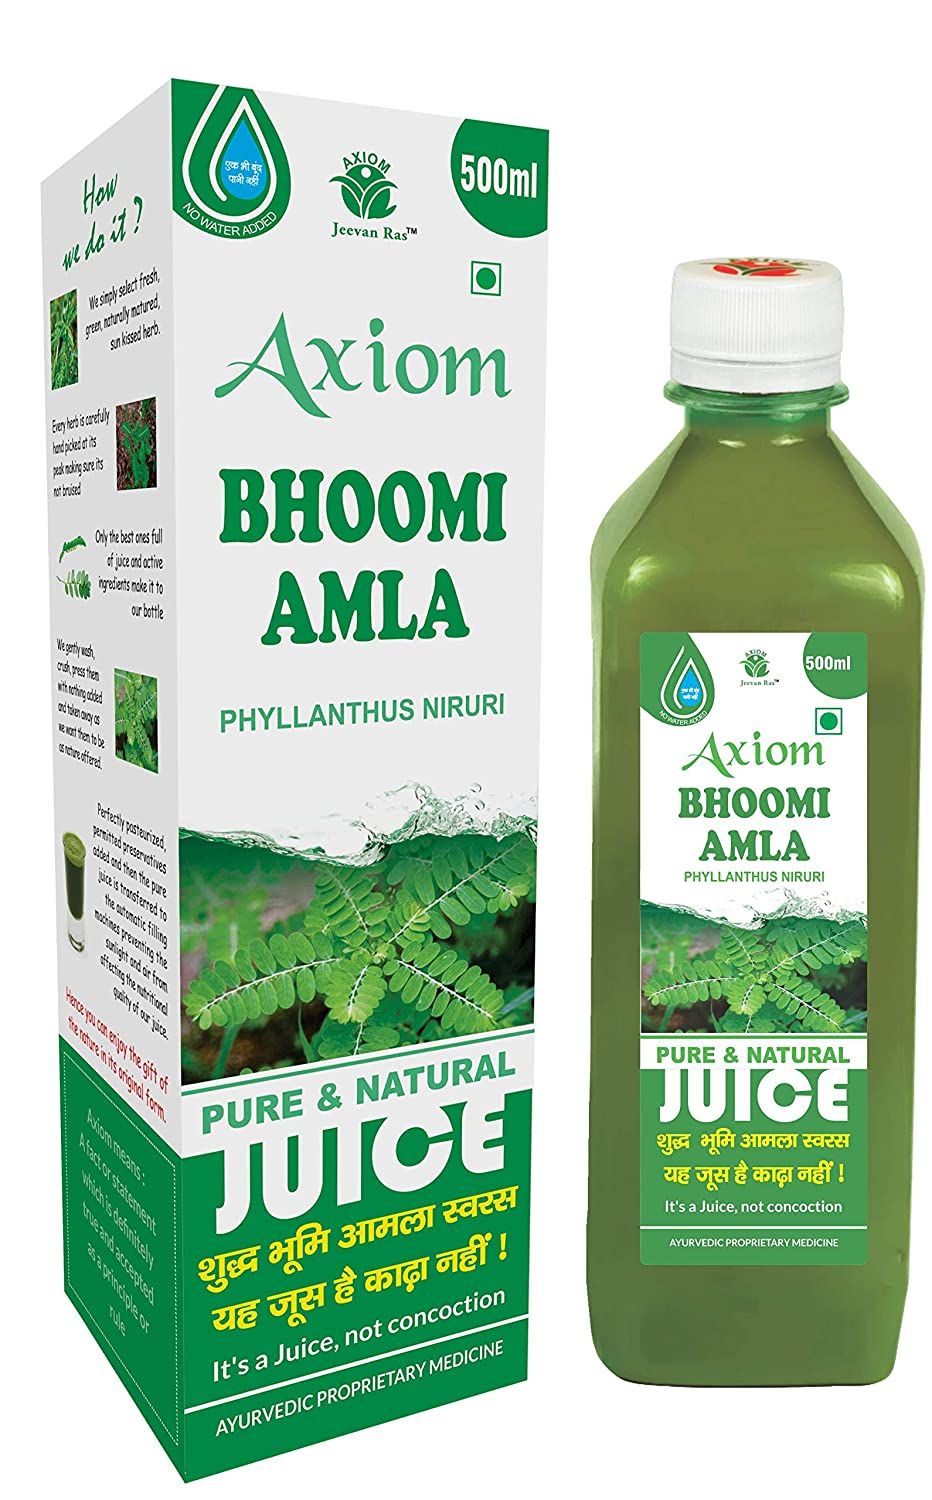 Axiom Bhoomi Amla Juice Image